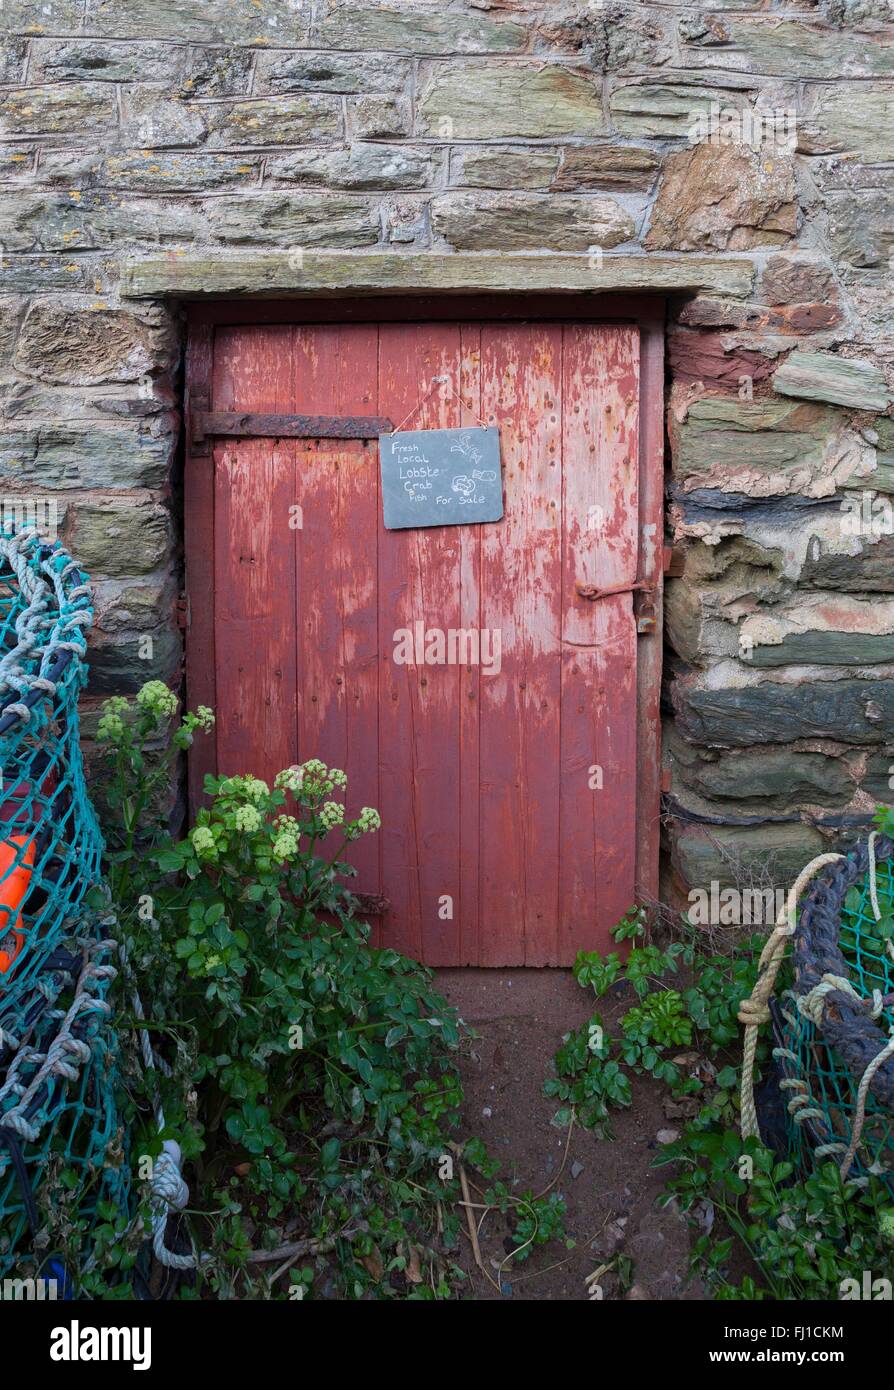 Vieille porte entourée par des casiers à homard, Hope Cove, Devon, Angleterre Banque D'Images